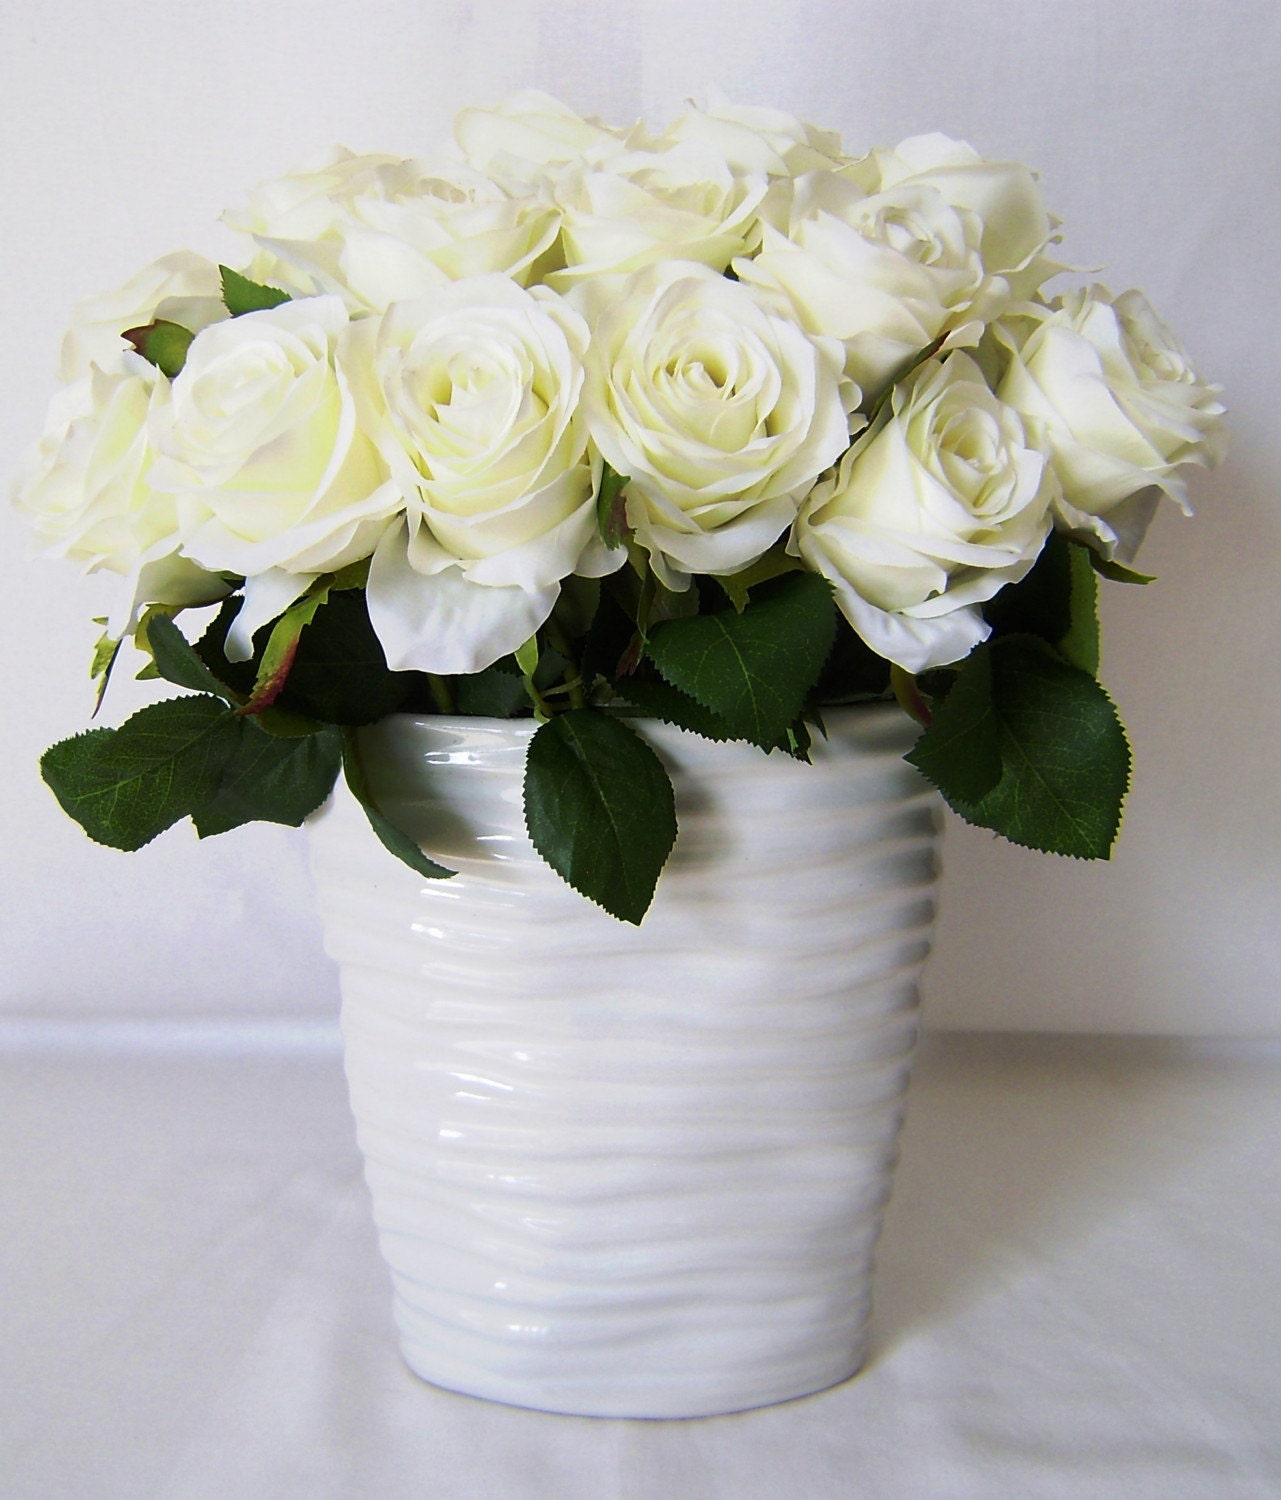 white rose flowers. on Etsy. Silk